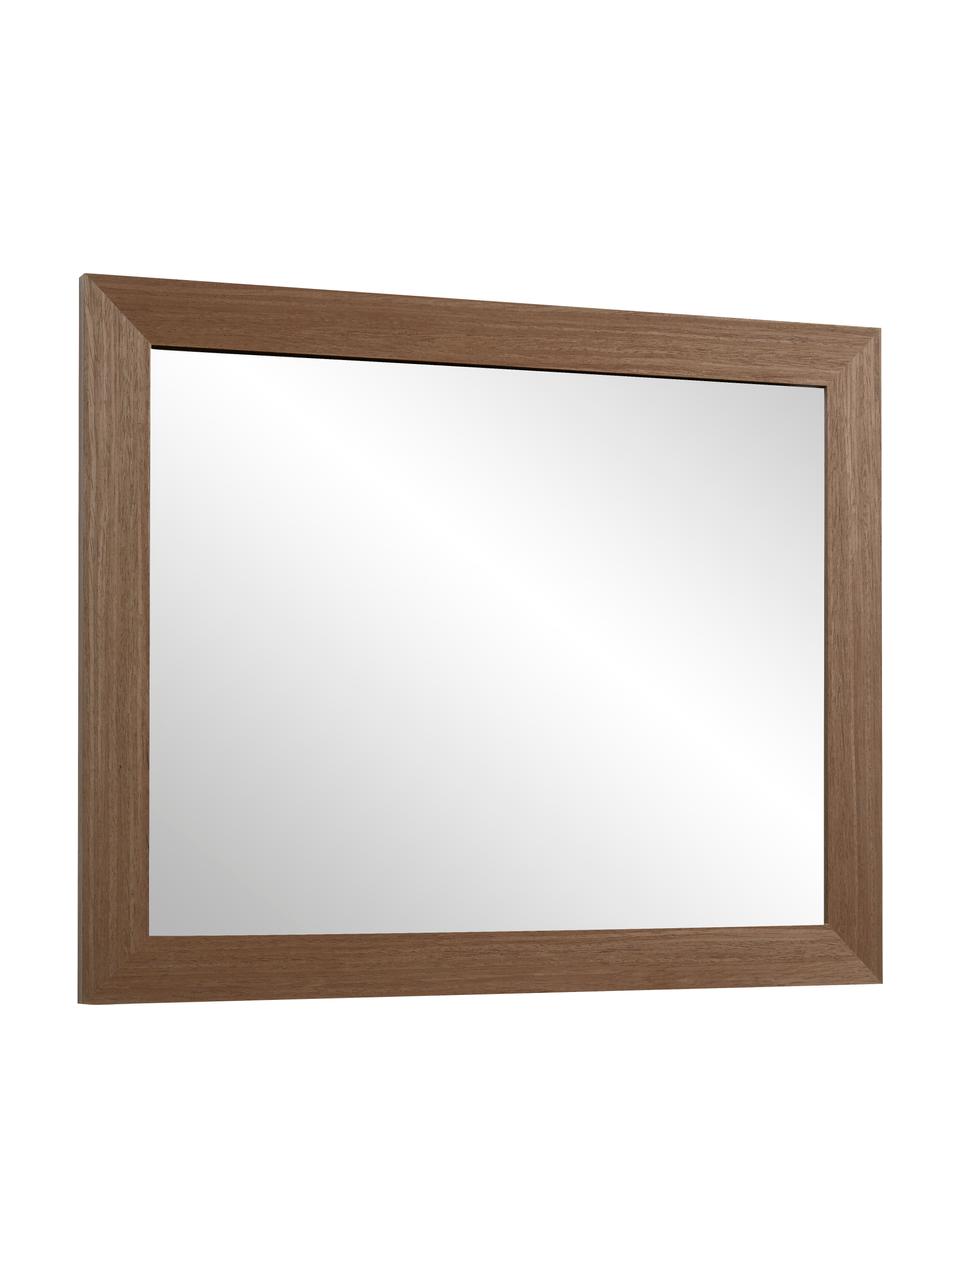 Specchio da parete con cornice in legno Wilany, Cornice: legno, Superficie dello specchio: lastra di vetro, Marrone scuro, Larg. 47 x Alt. 58 cm